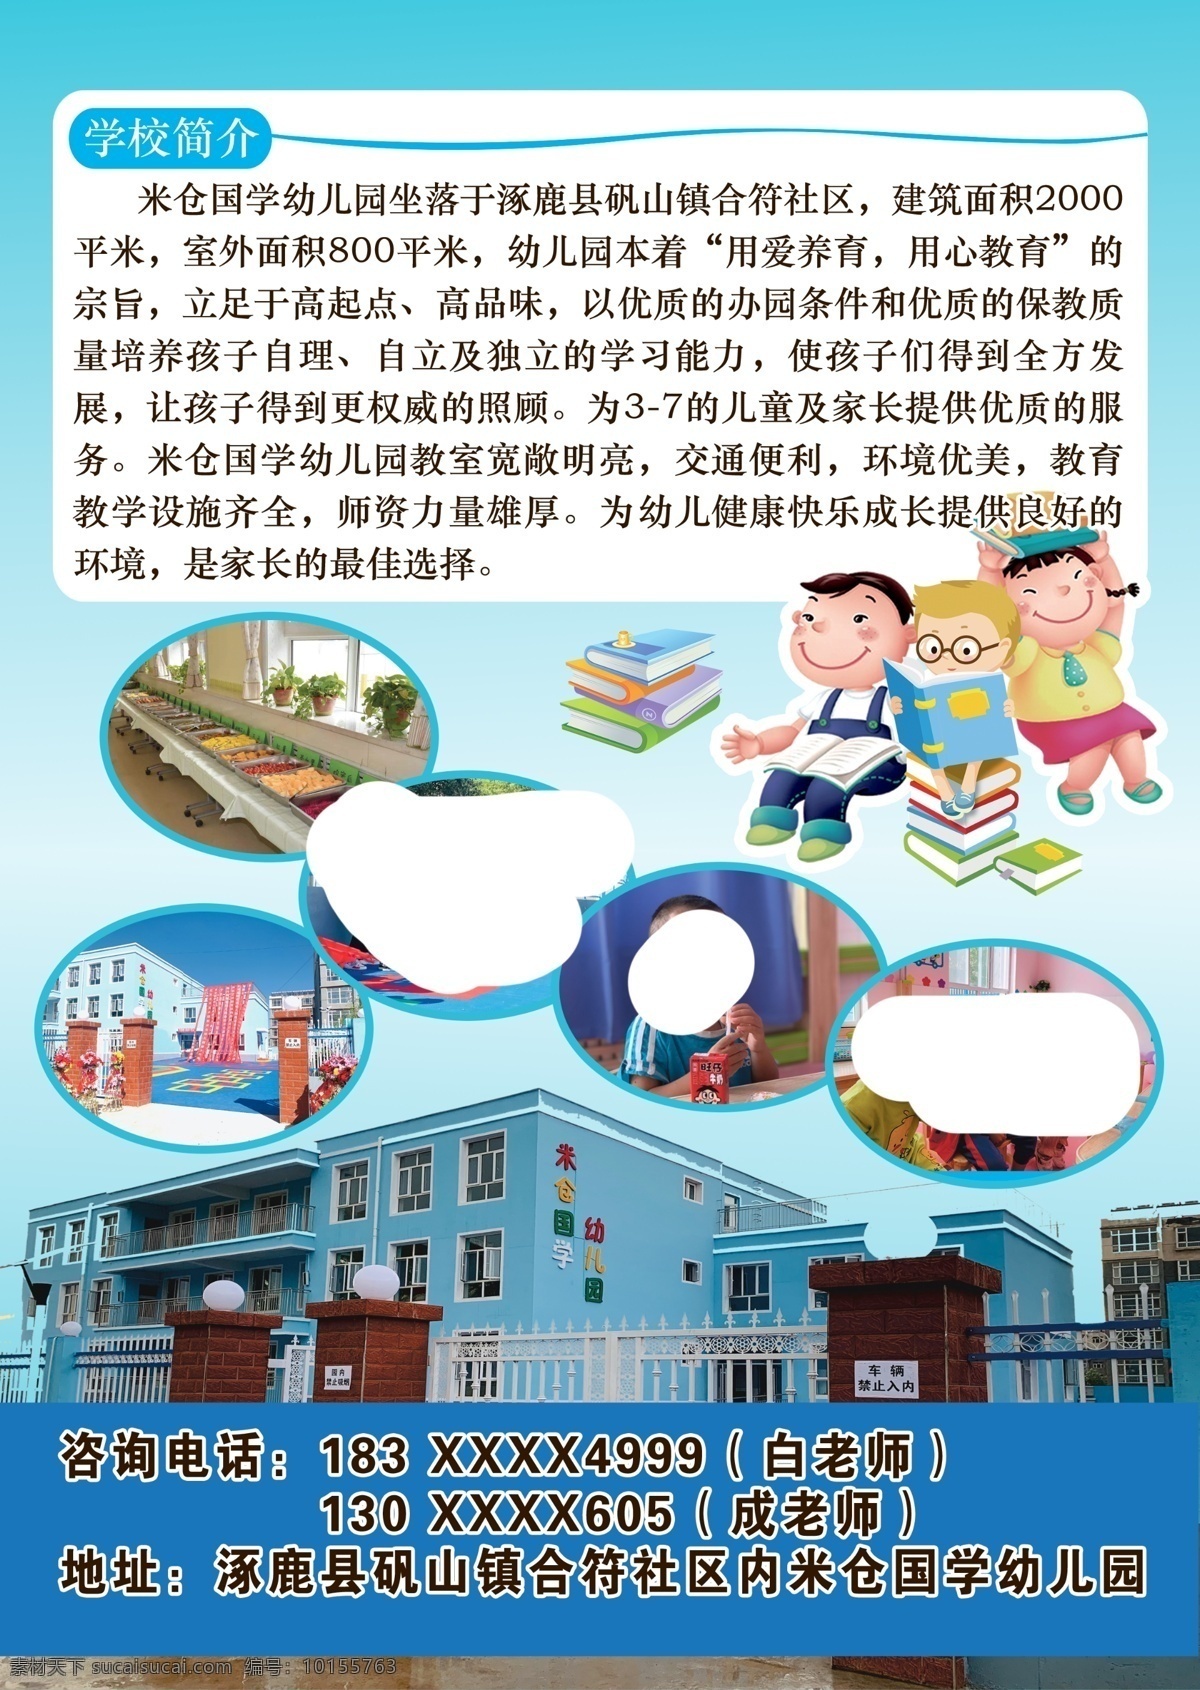 幼儿园宣传页 幼儿园 介绍 招生 幼教 学龄前儿童 卡通 dm宣传单